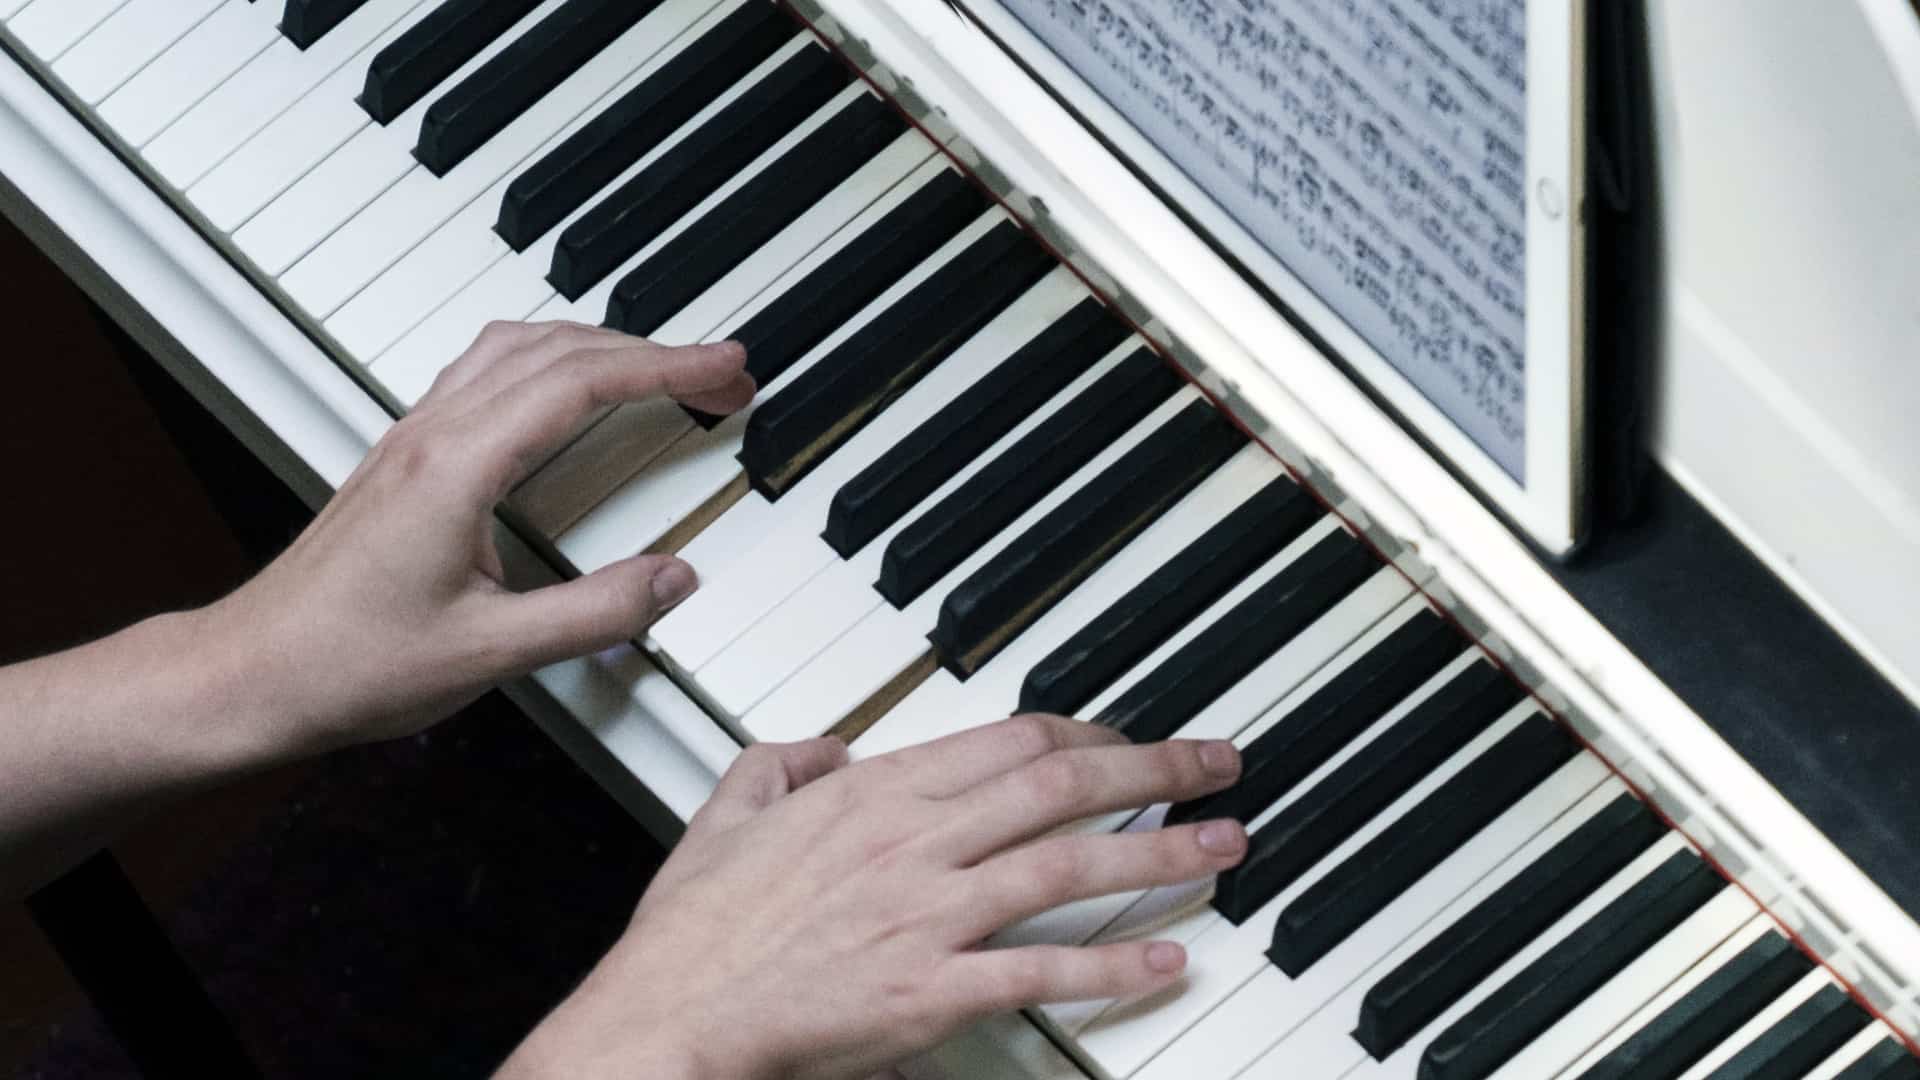 Klavierschule Onlinekurs mit Musiklehrer Andreas Czeppel - becomePro